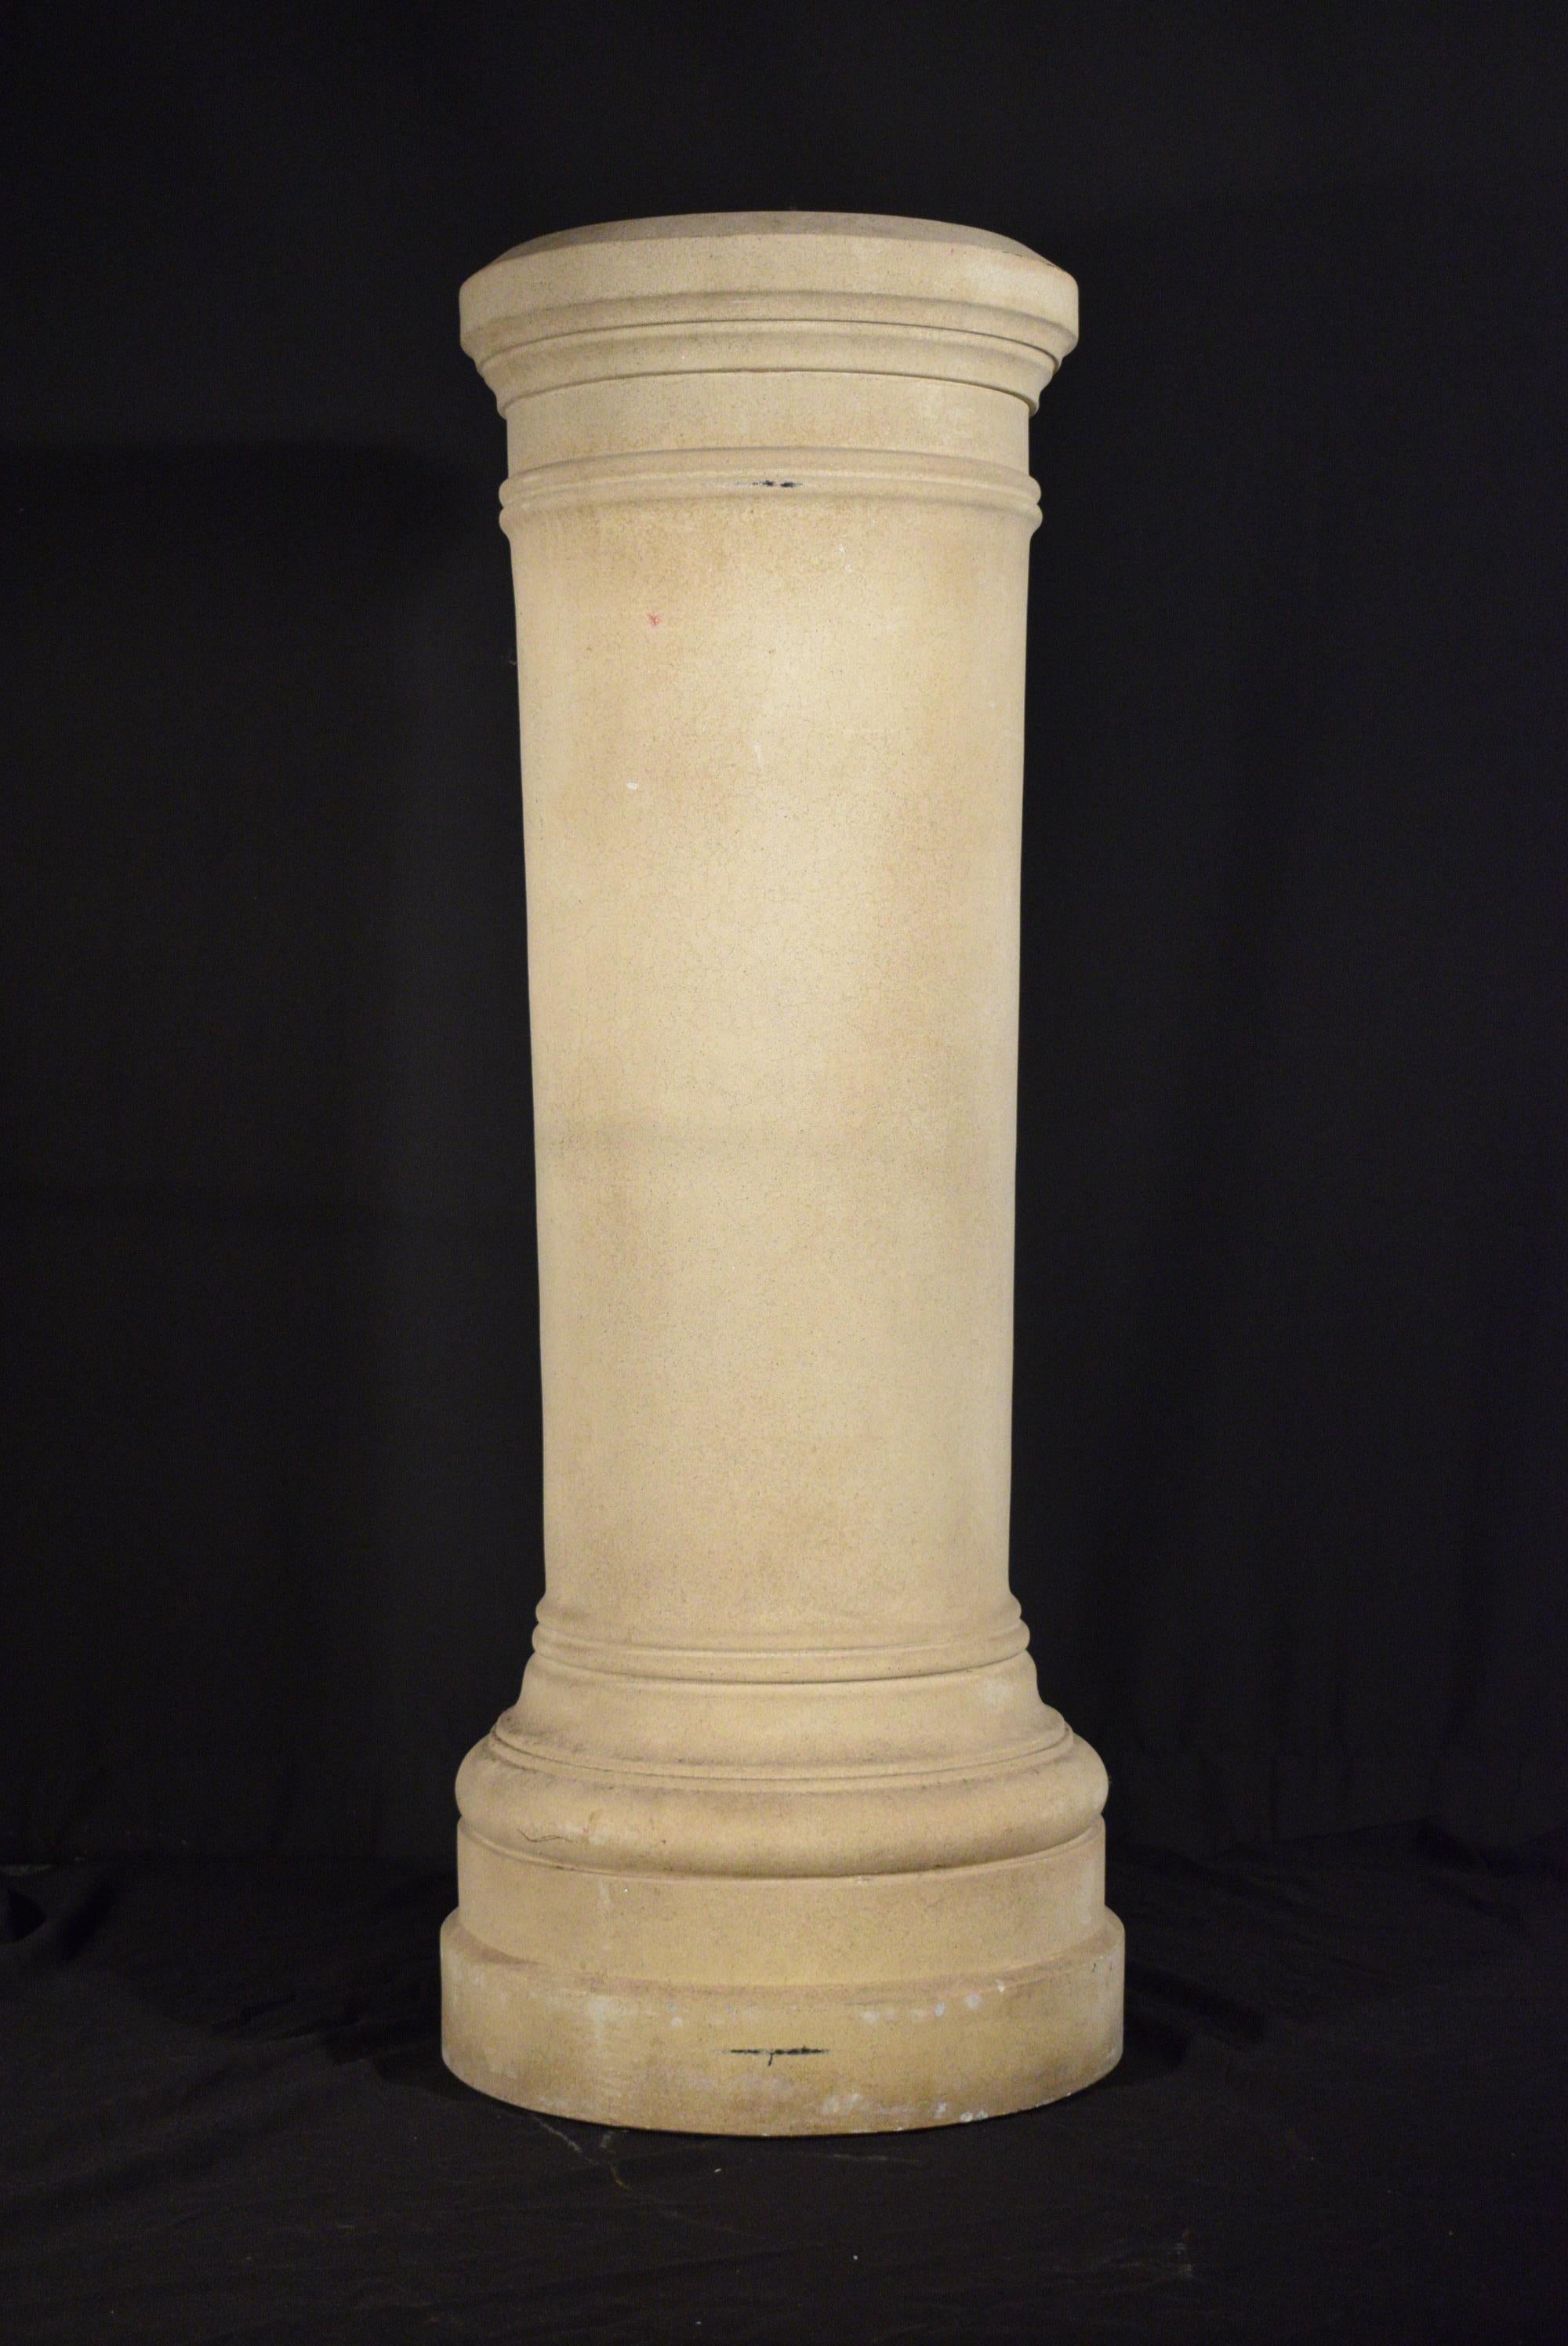 Paar von Michael Taylor Designs, Inc. (amerikanisch, gegründet 1985), ein Paar unverzierte runde Säulen oder Sockel aus Kunststein mit einem ringförmigen Körperband. Erhöht auf einem entsprechenden Sockel.
Abmessungen: Höhe 47